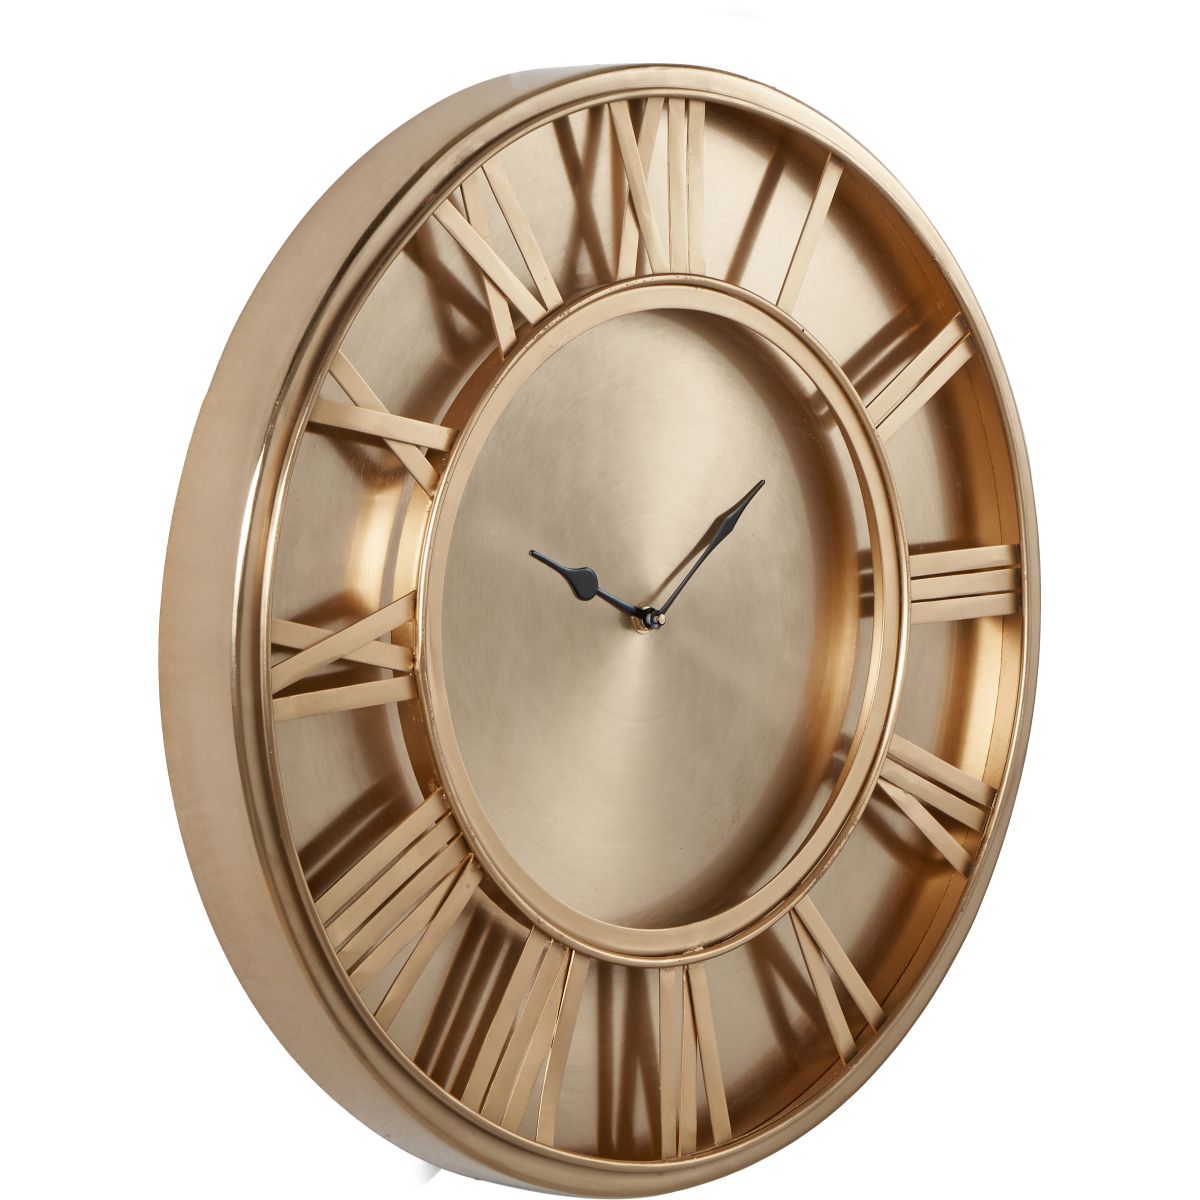 Antique Brass Round Wall Clock